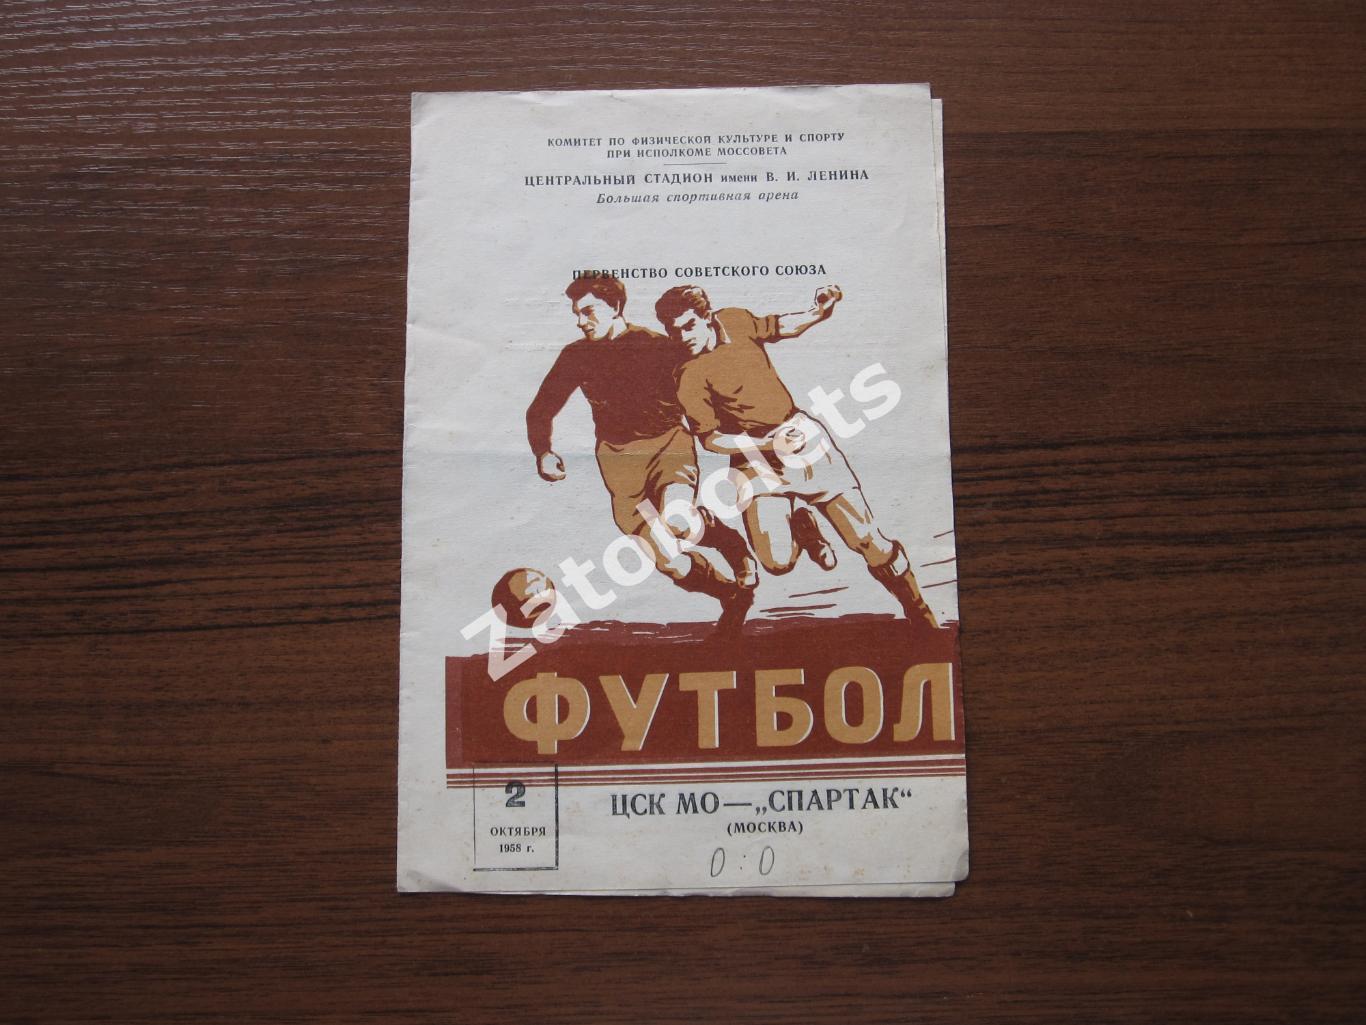 ЦСКА / ЦСК МО - Спартак Москва 1958